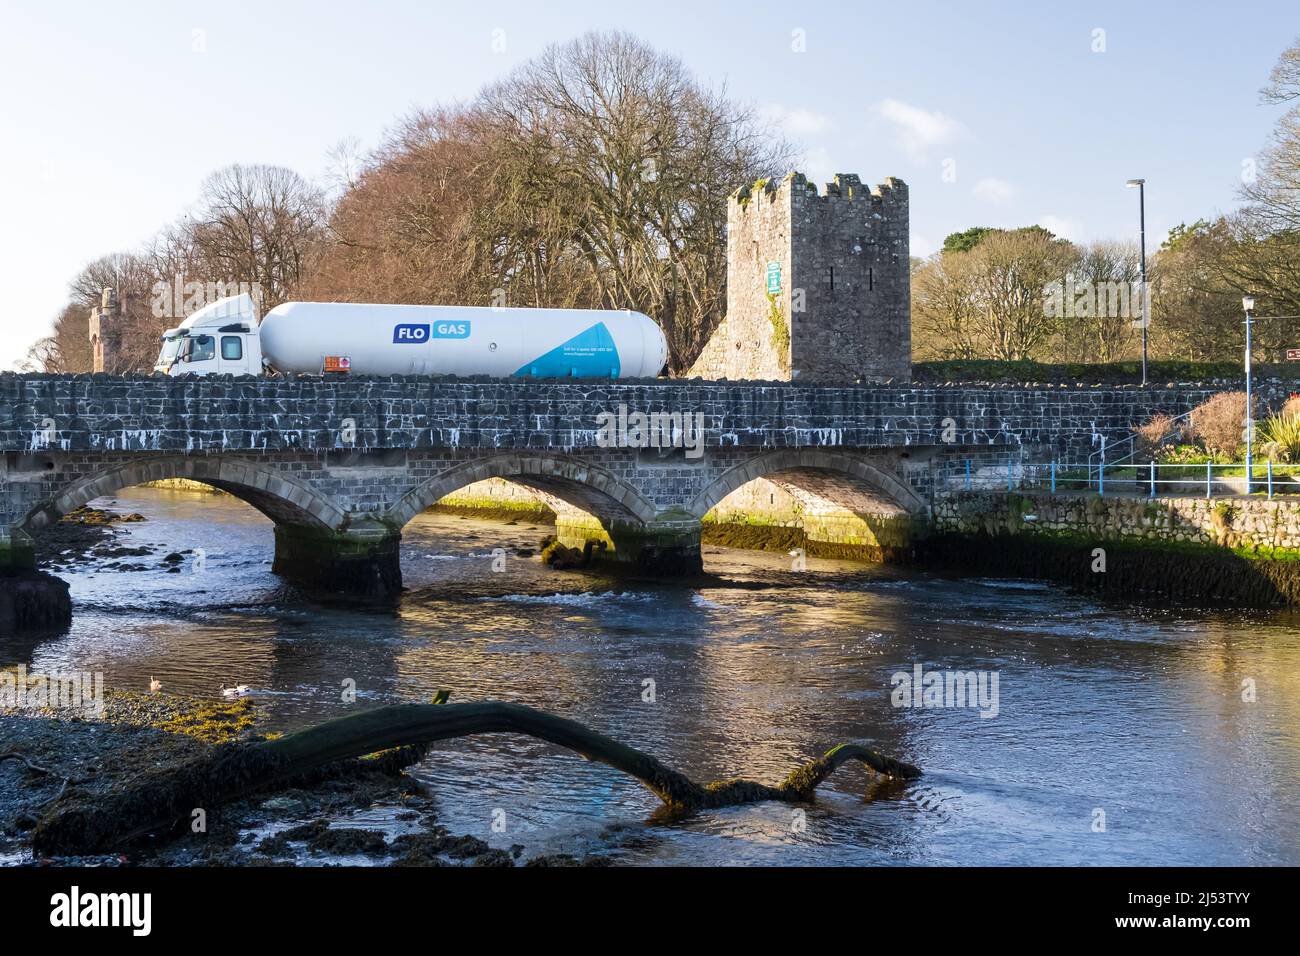 White Flo gas Truck attraversa il ponte sul fiume all'ingresso dello storico villaggio di Glenarm nella contea di Antrim, nell'Irlanda del Nord. Foto Stock